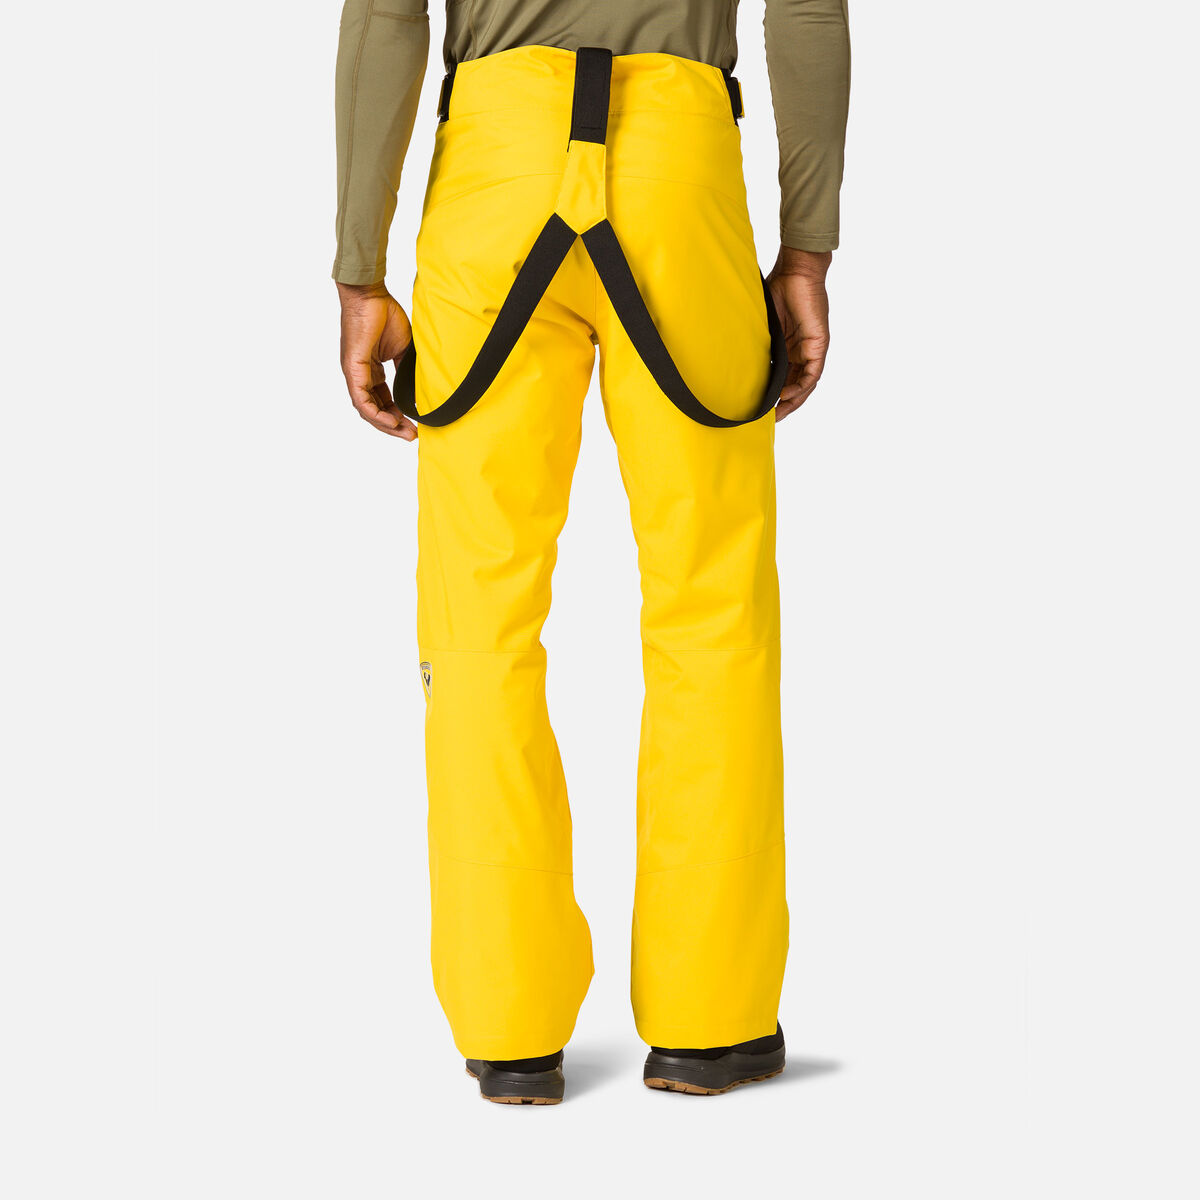 Rossignol Men's Ski Pants Yellow